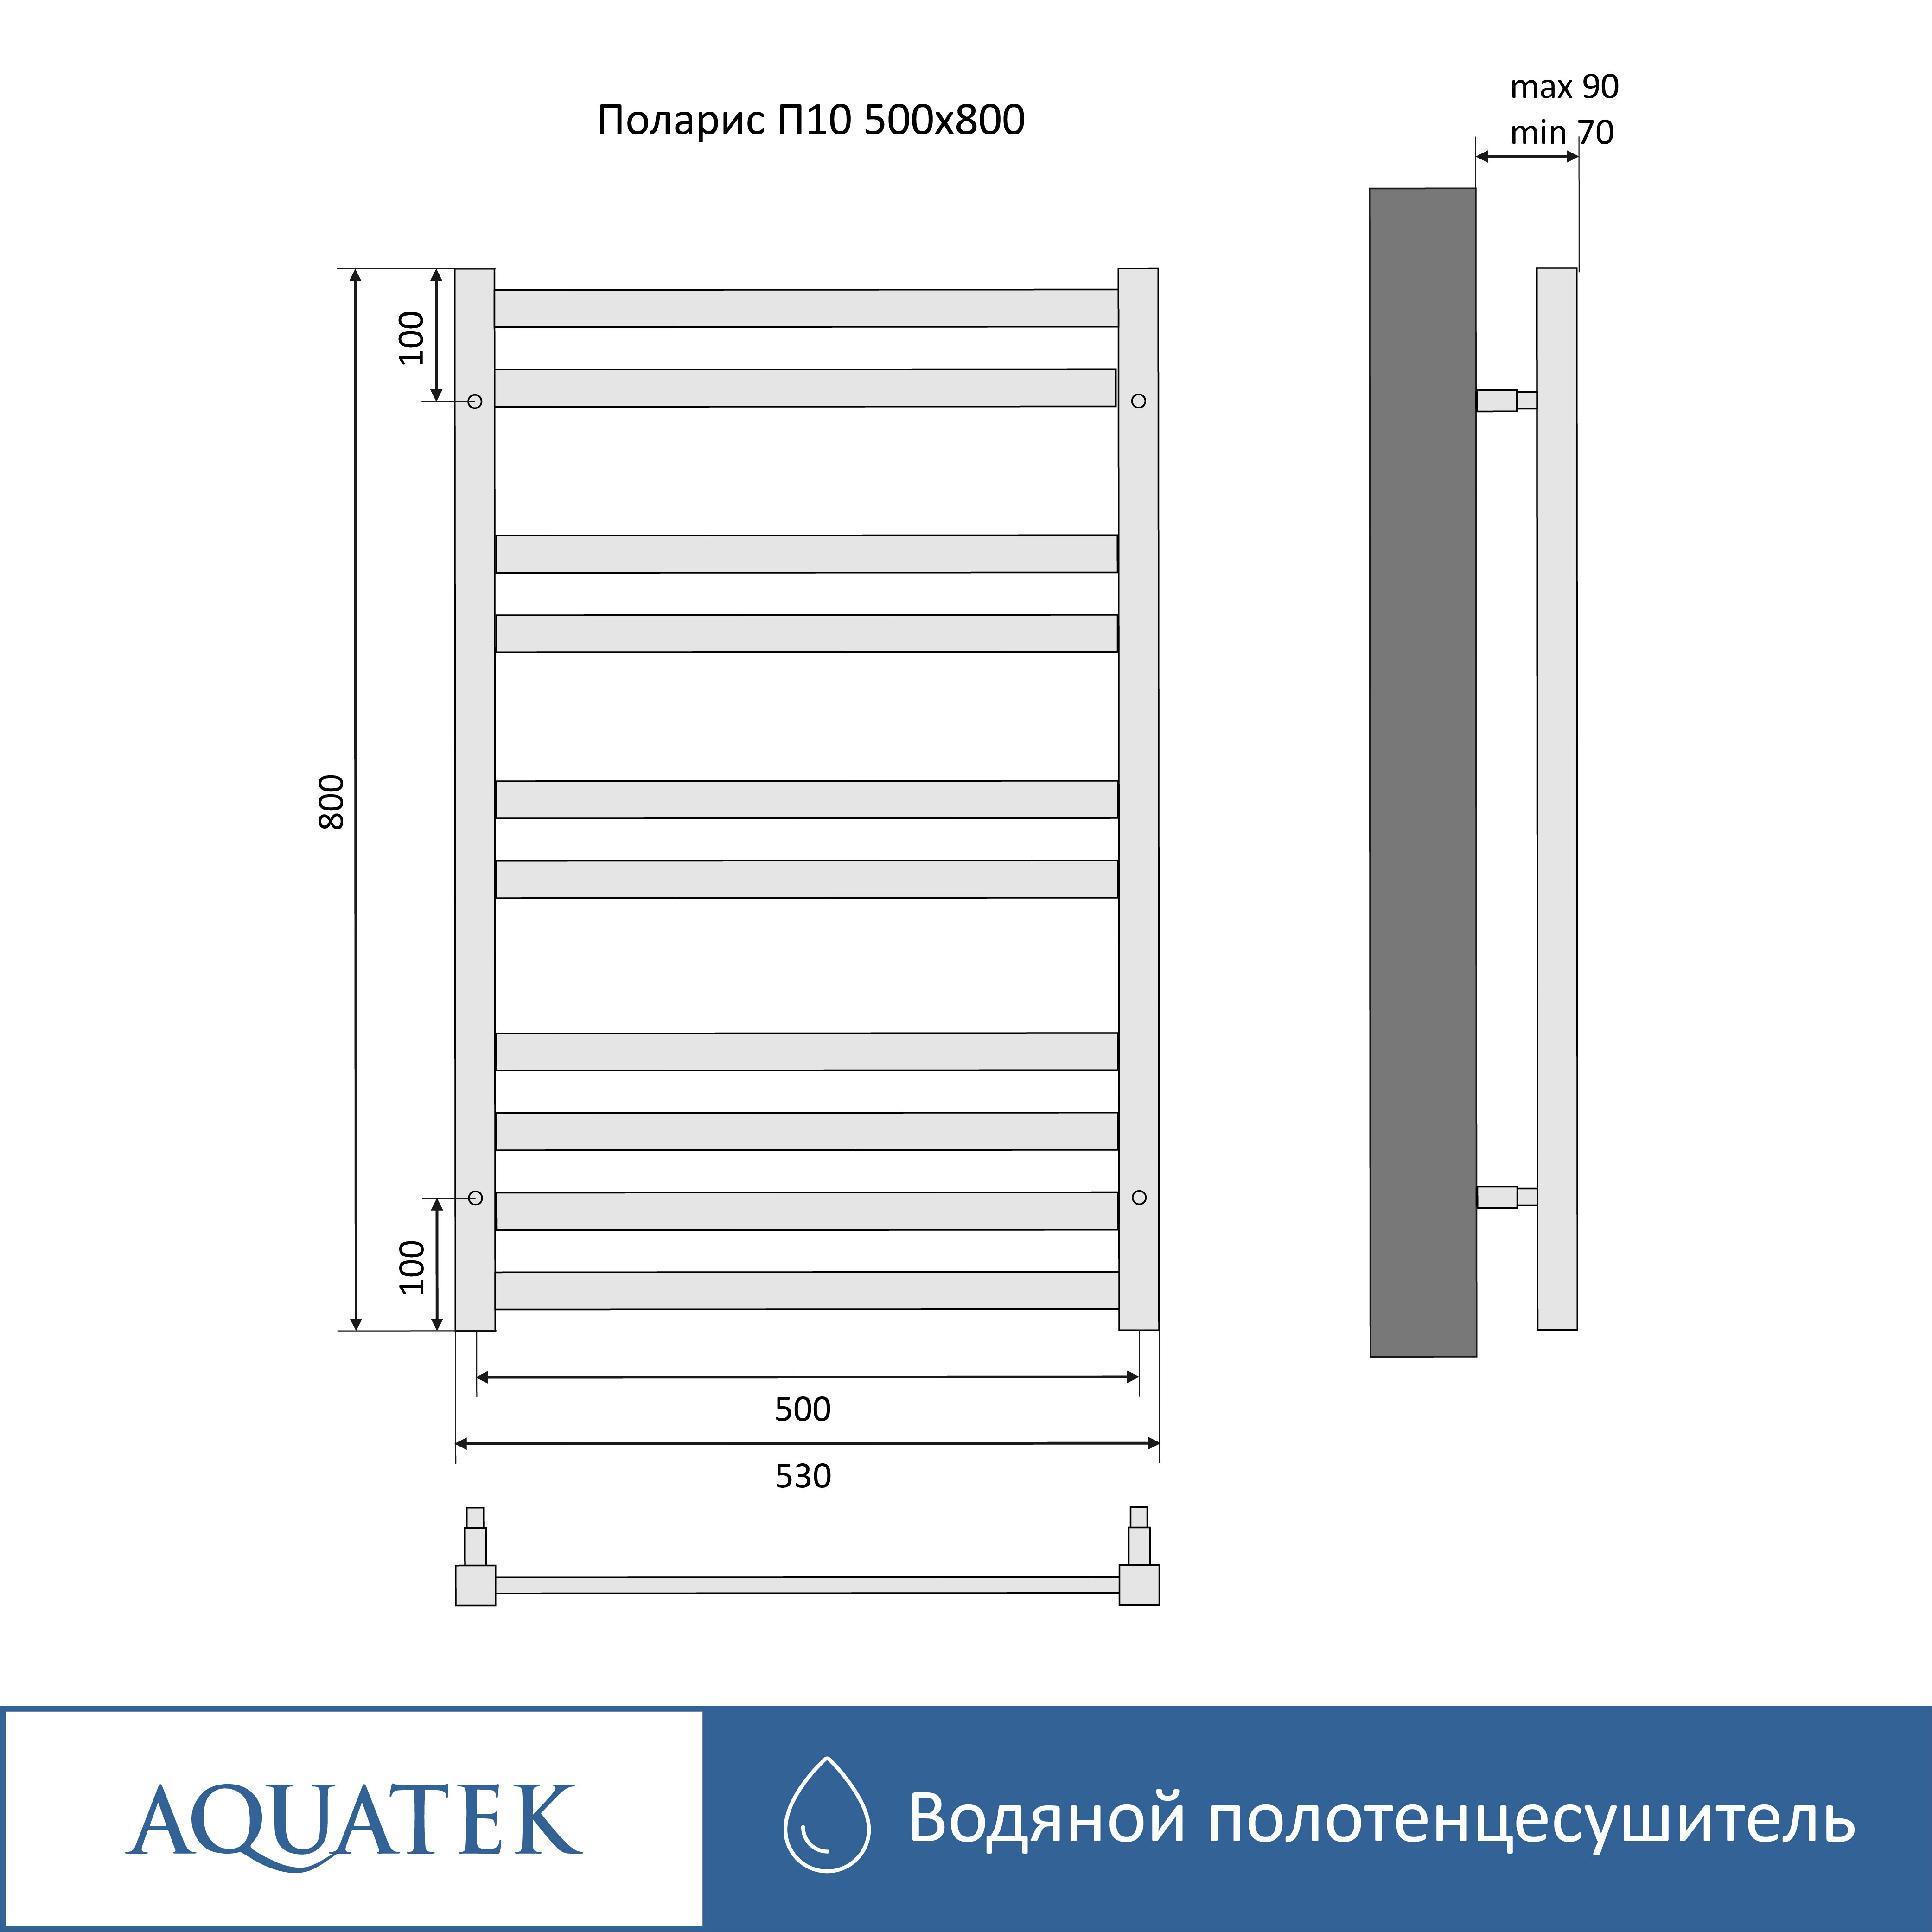 Полотенцесушитель водяной Aquatek Поларис П10 500х800, черный муар AQ KO1080BL - 14